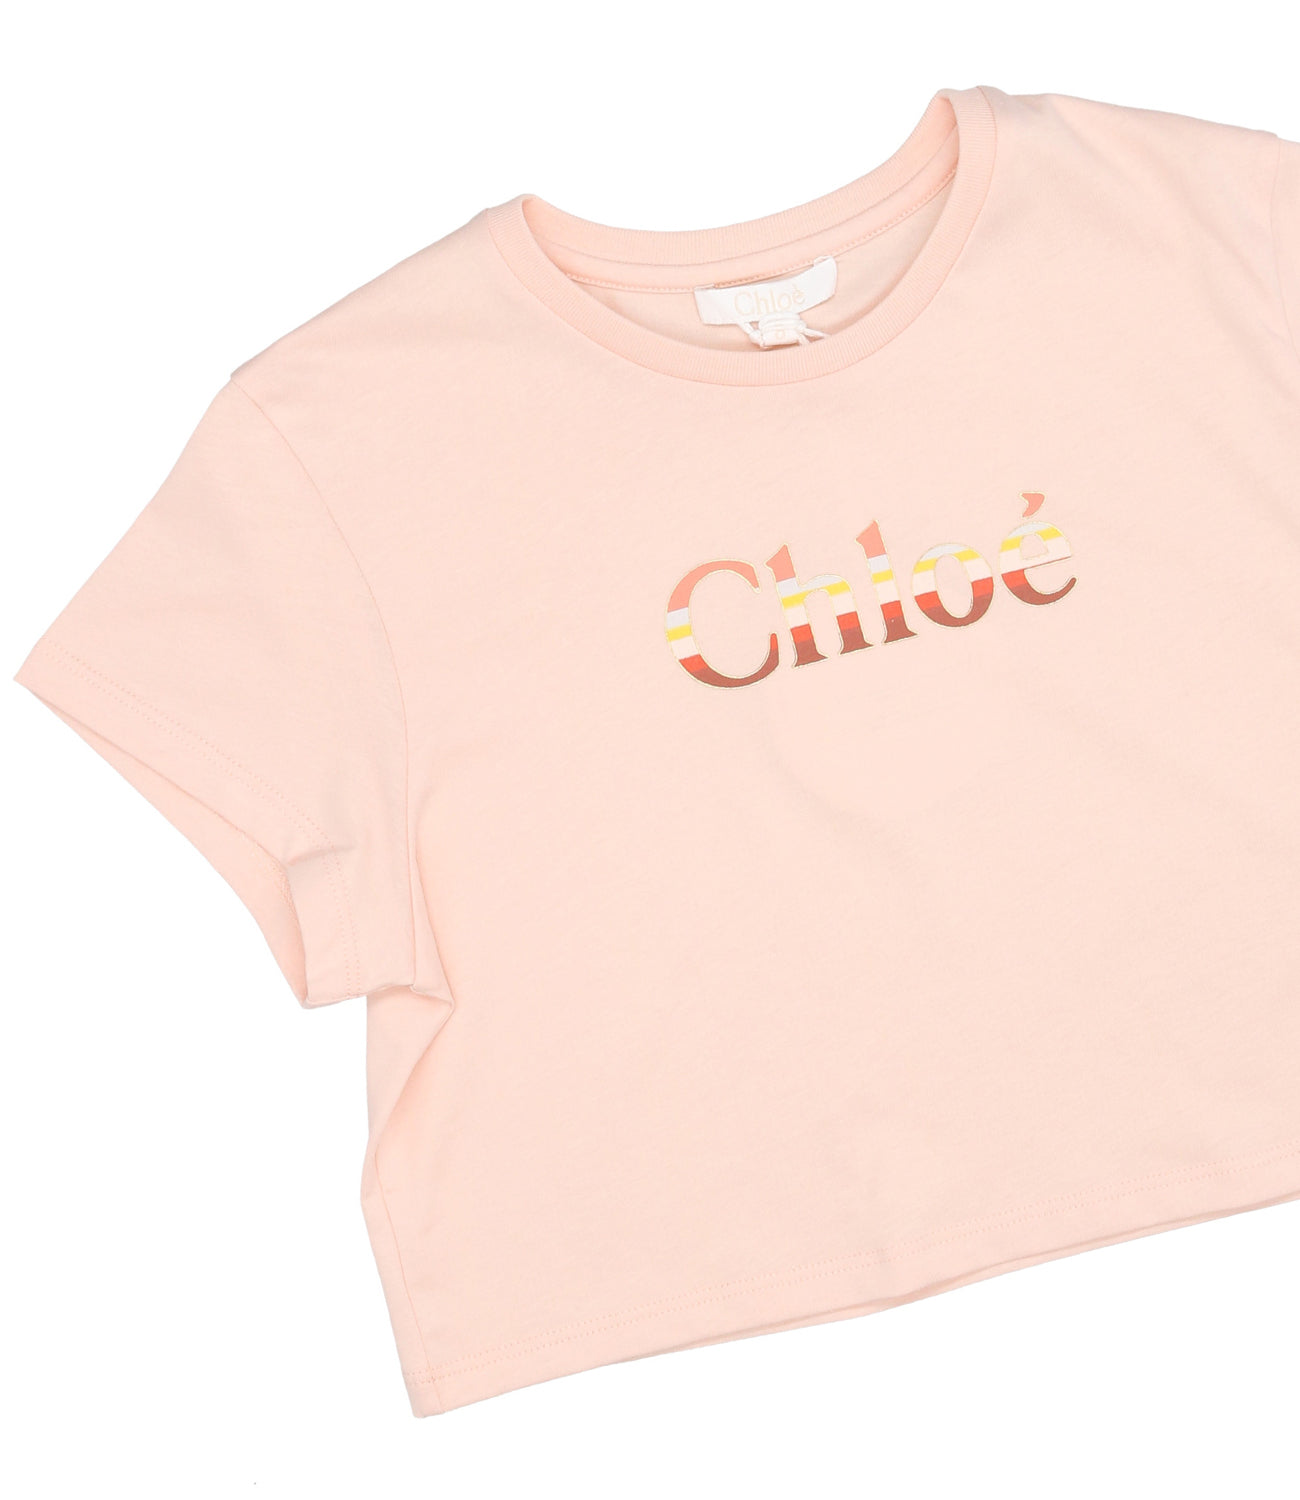 Chloè Kids | T-Shirt Rosa Antico